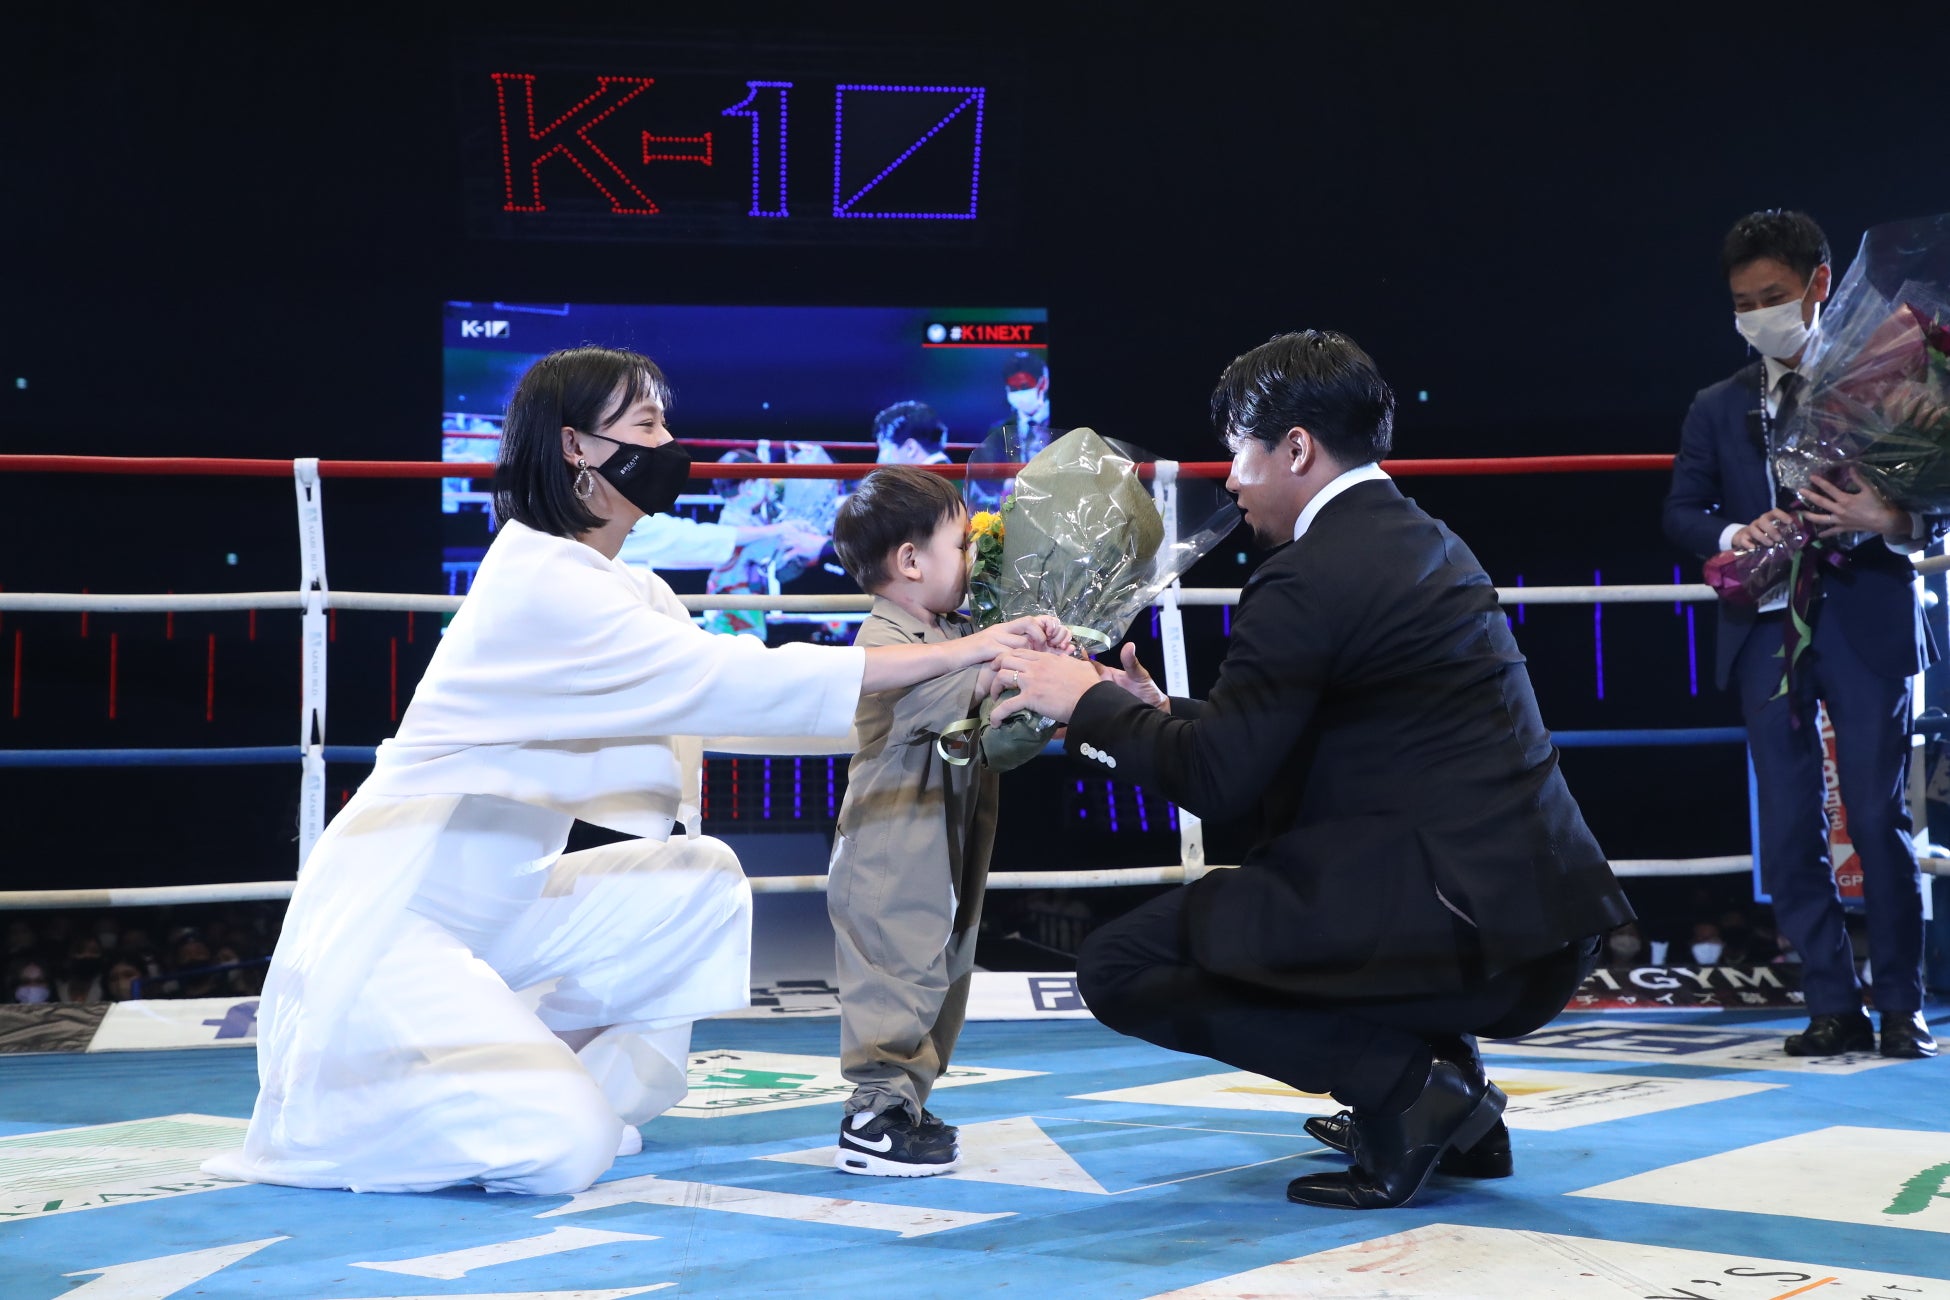 第2代K-1スーパー・フェザー級王者・卜部弘嵩が引退セレモニー「またいつか、格闘技に恩返しができたらいいなと思います」のサブ画像5